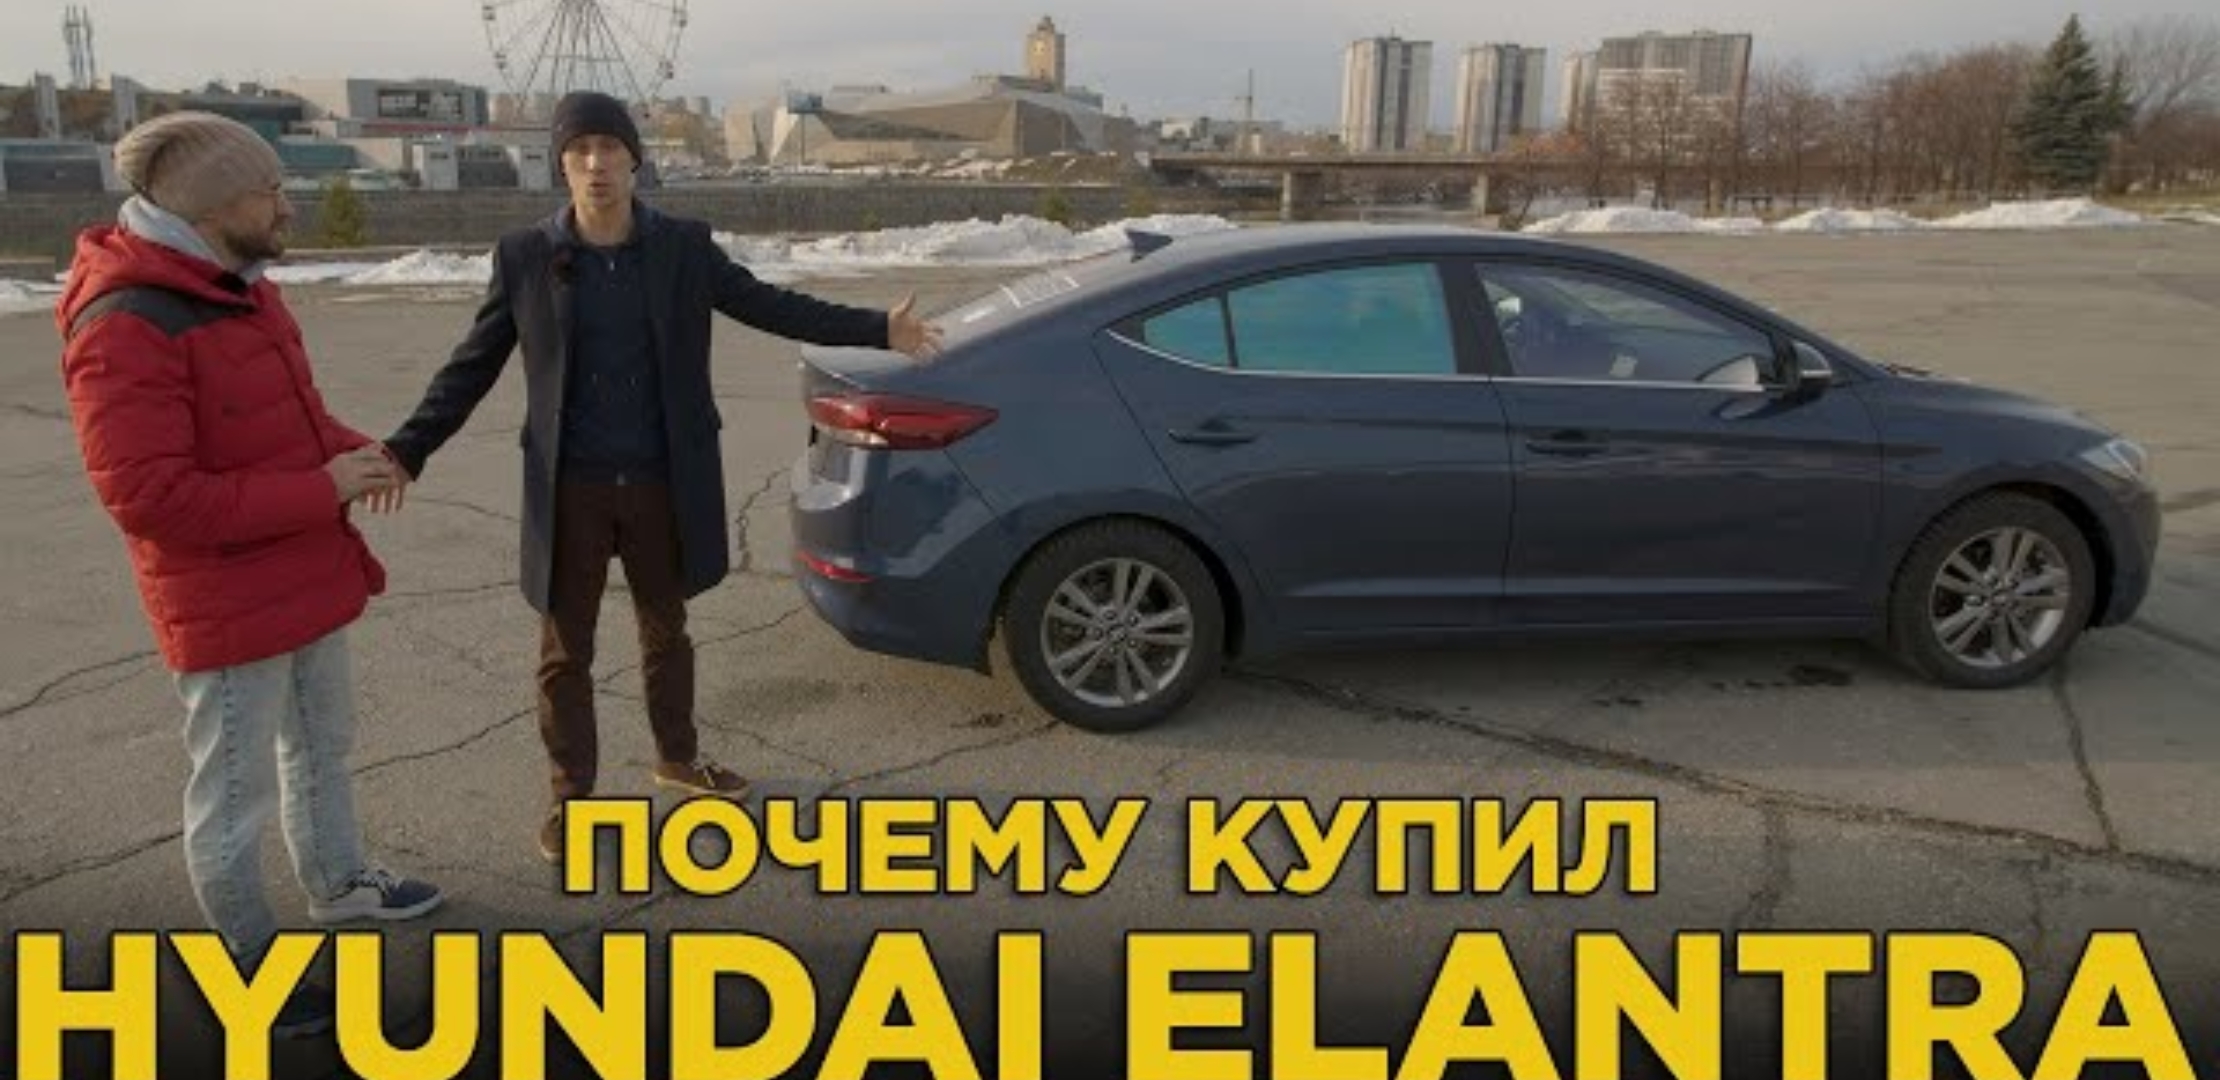 Анонс видео-теста Почему купил Hyundai Elantra | Отзыв владельца Хёндай Элантра | Автокаста в гостях у Почему купил